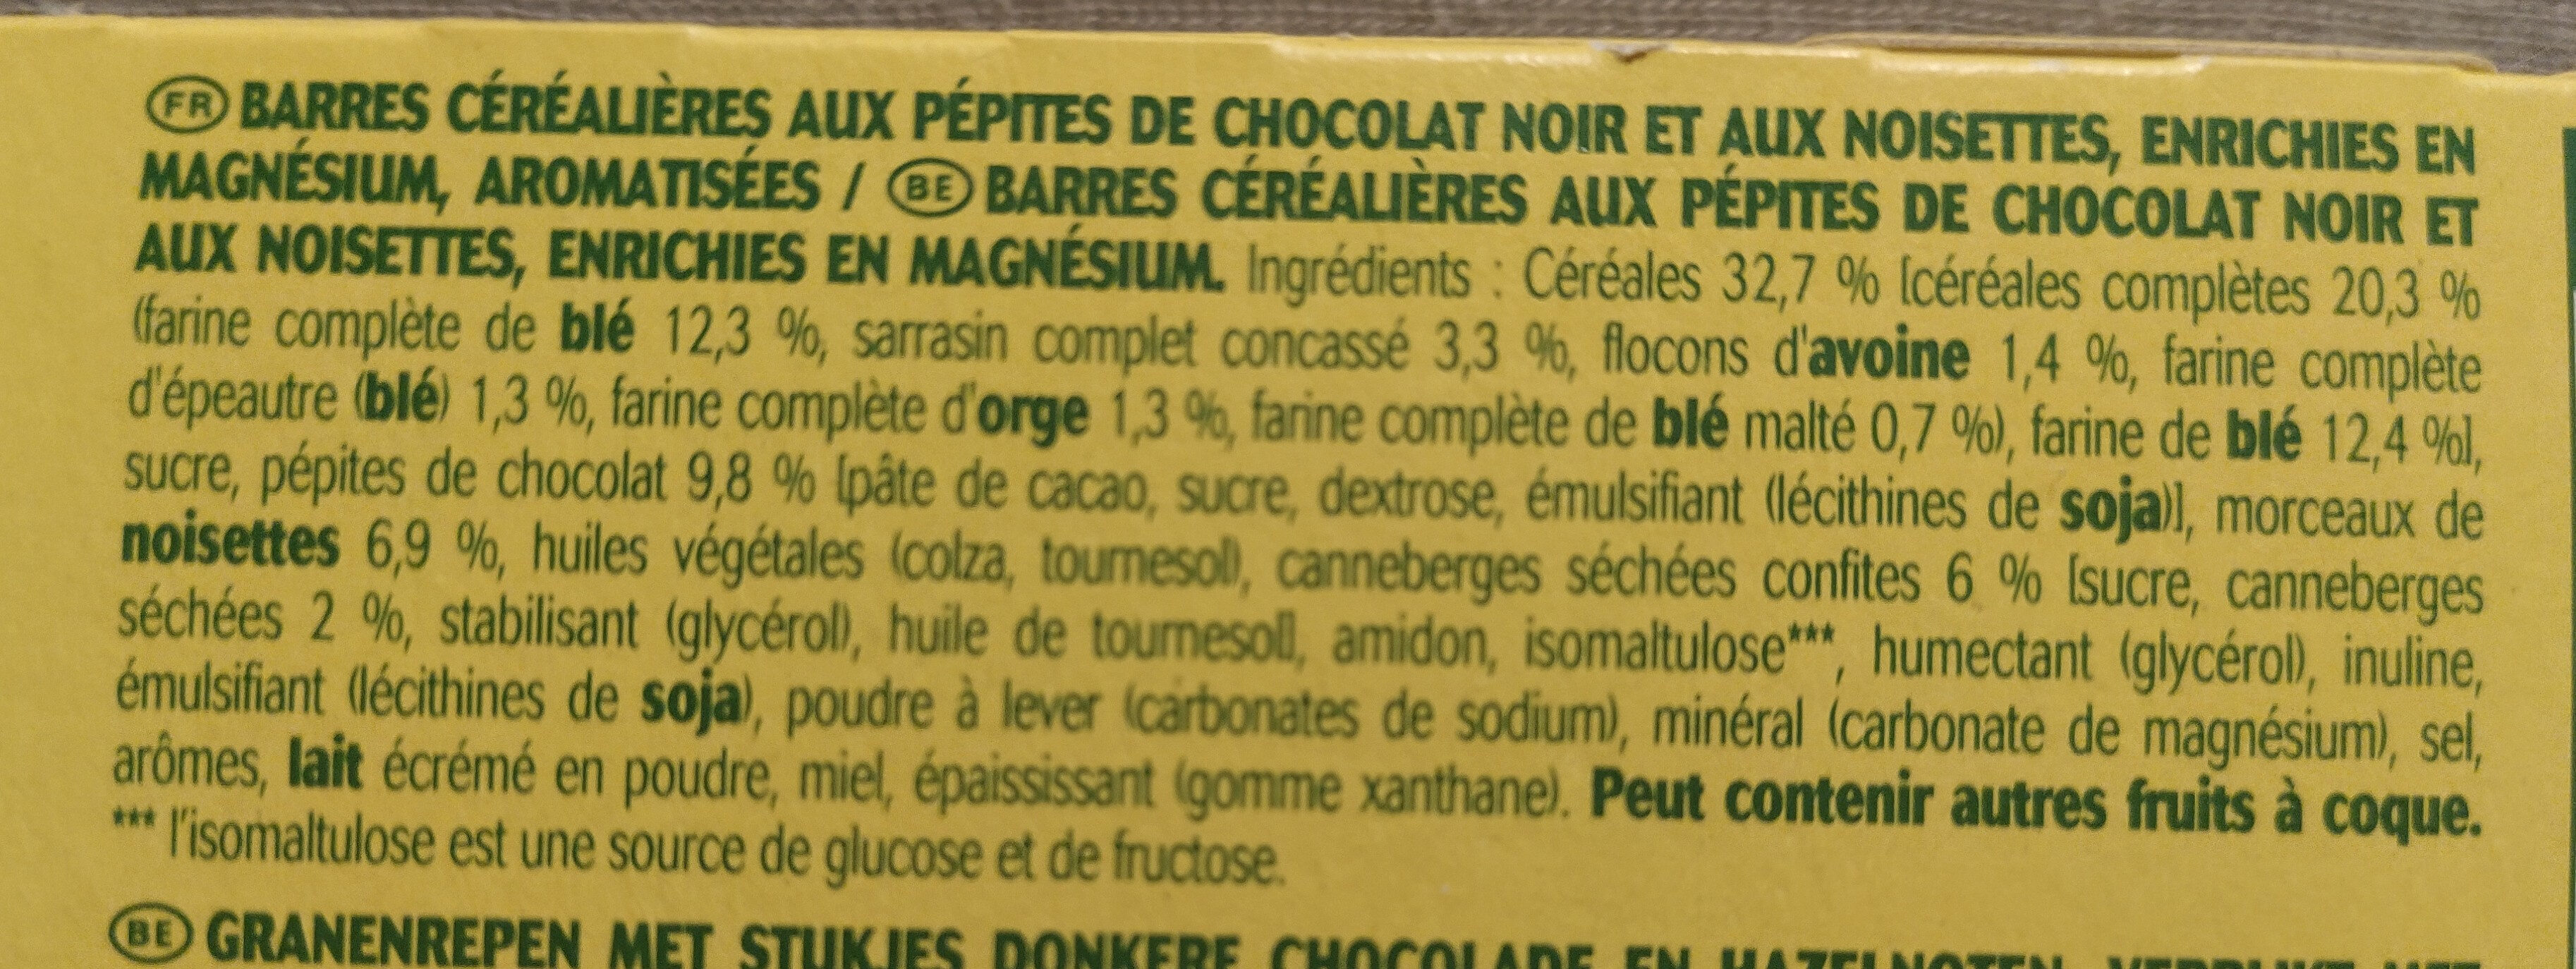 Barre moelleuse chocolat noir et noisettes - المكونات - fr